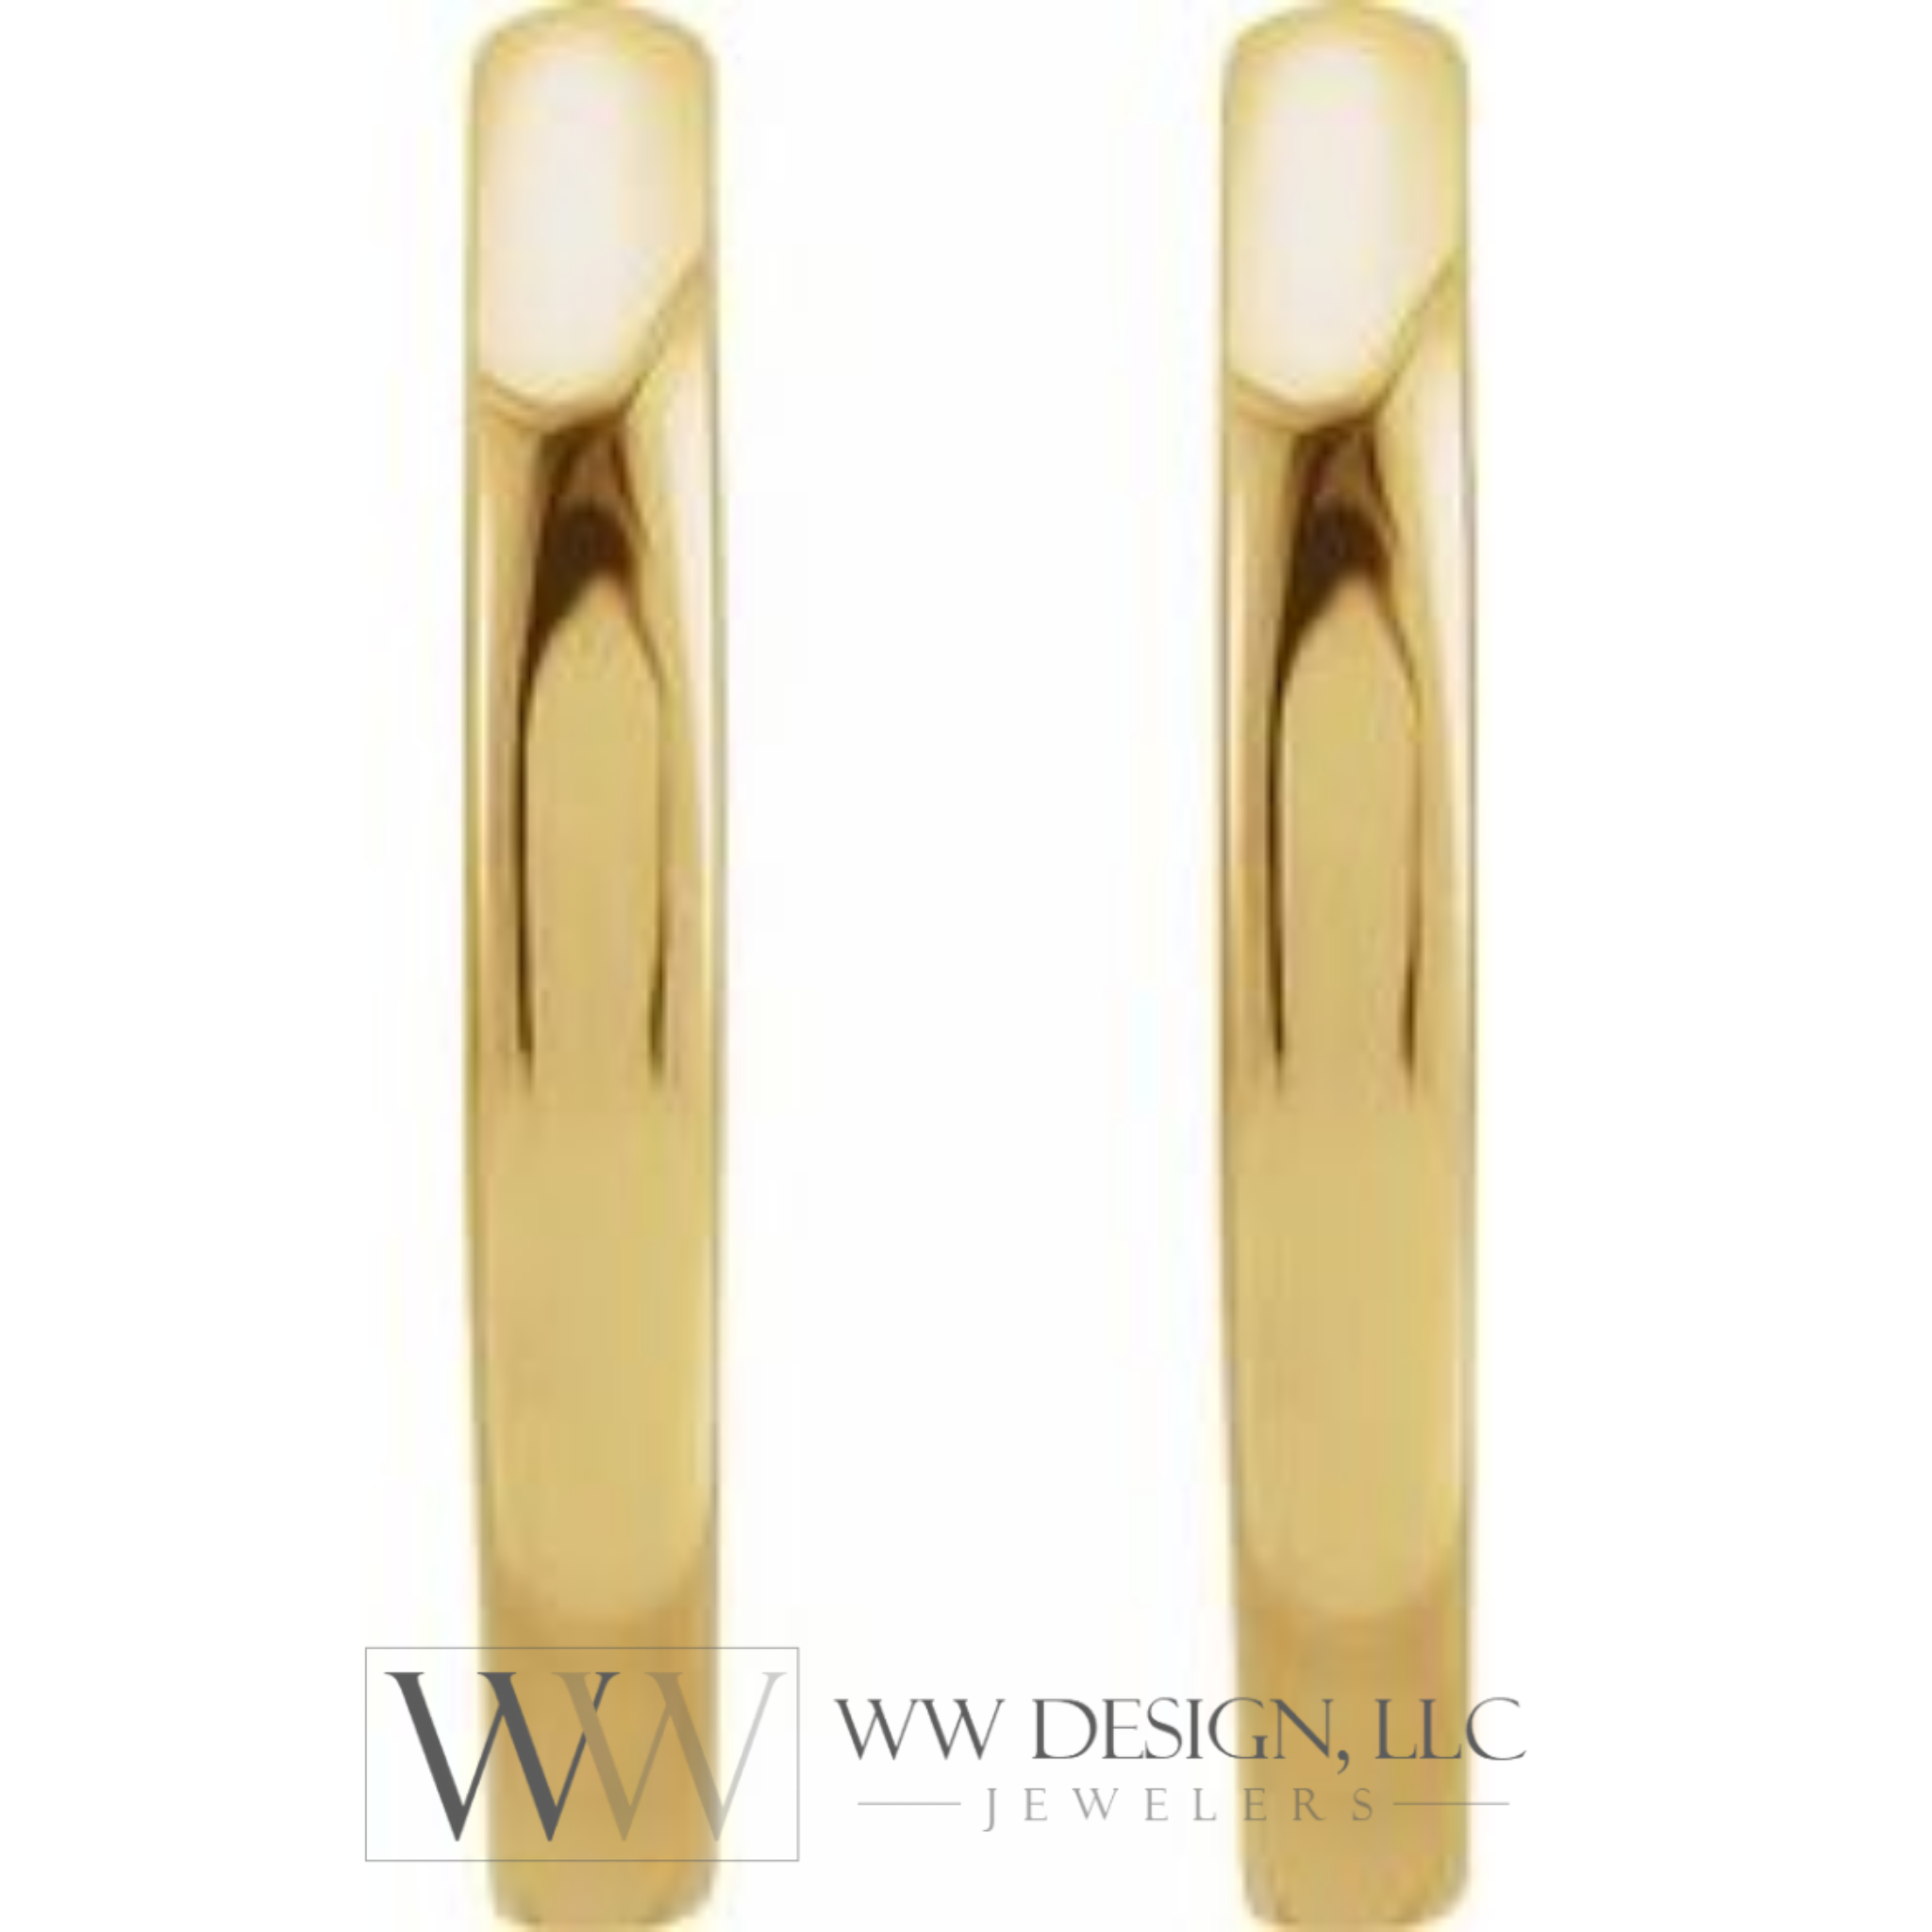 Hoop Huggie Sleeper Earrings 15mm - 14K Gold (Y, R OR W), Platinum, or Sterling Silver - wwdesignjewelers.com